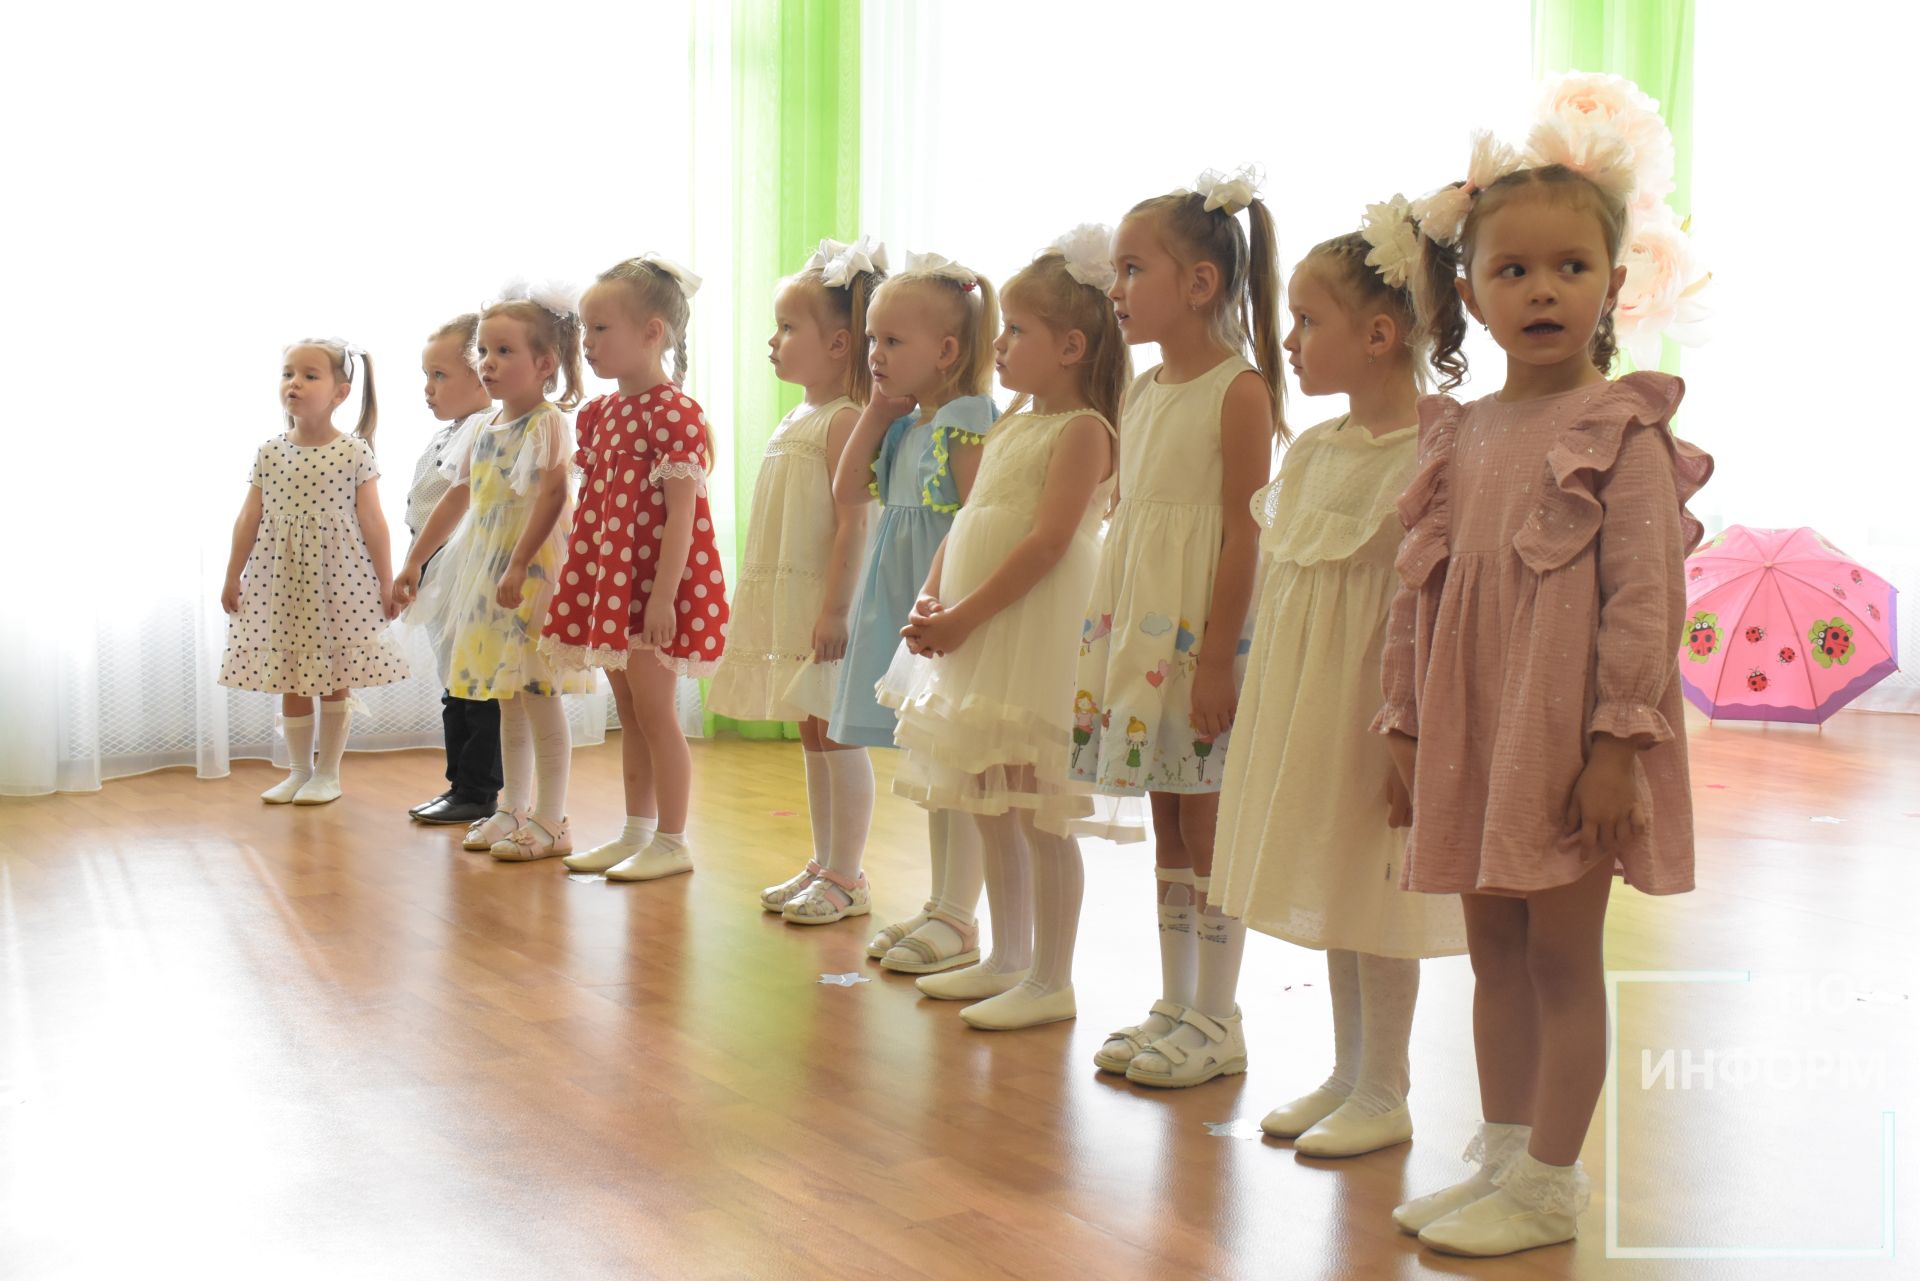 Праздник молодых душою в детском саду «Огонёк»